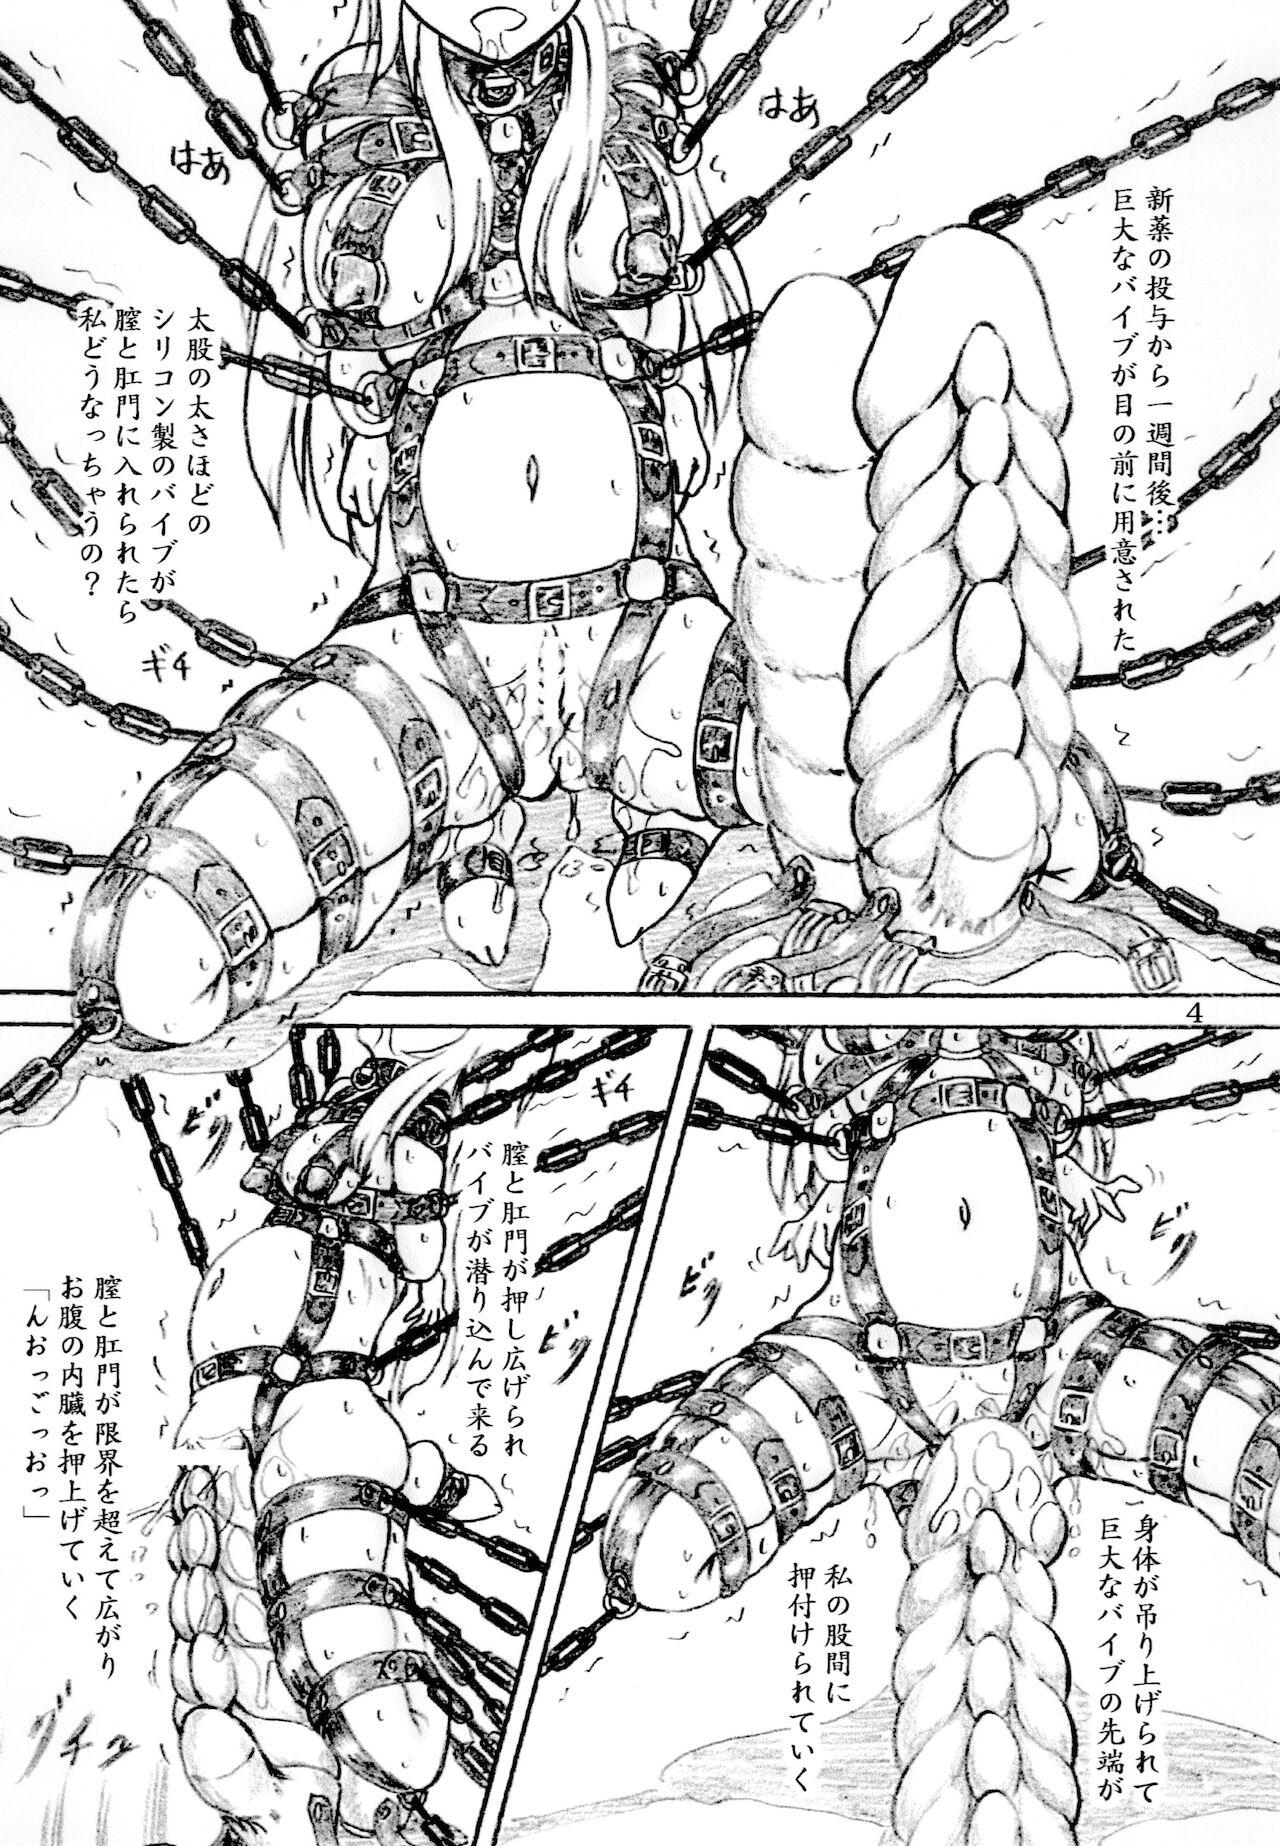 Cumming Jyoshidaisei zennshinn kousoku naizou kakuchou kyousei zecchou - Original Large - Page 4